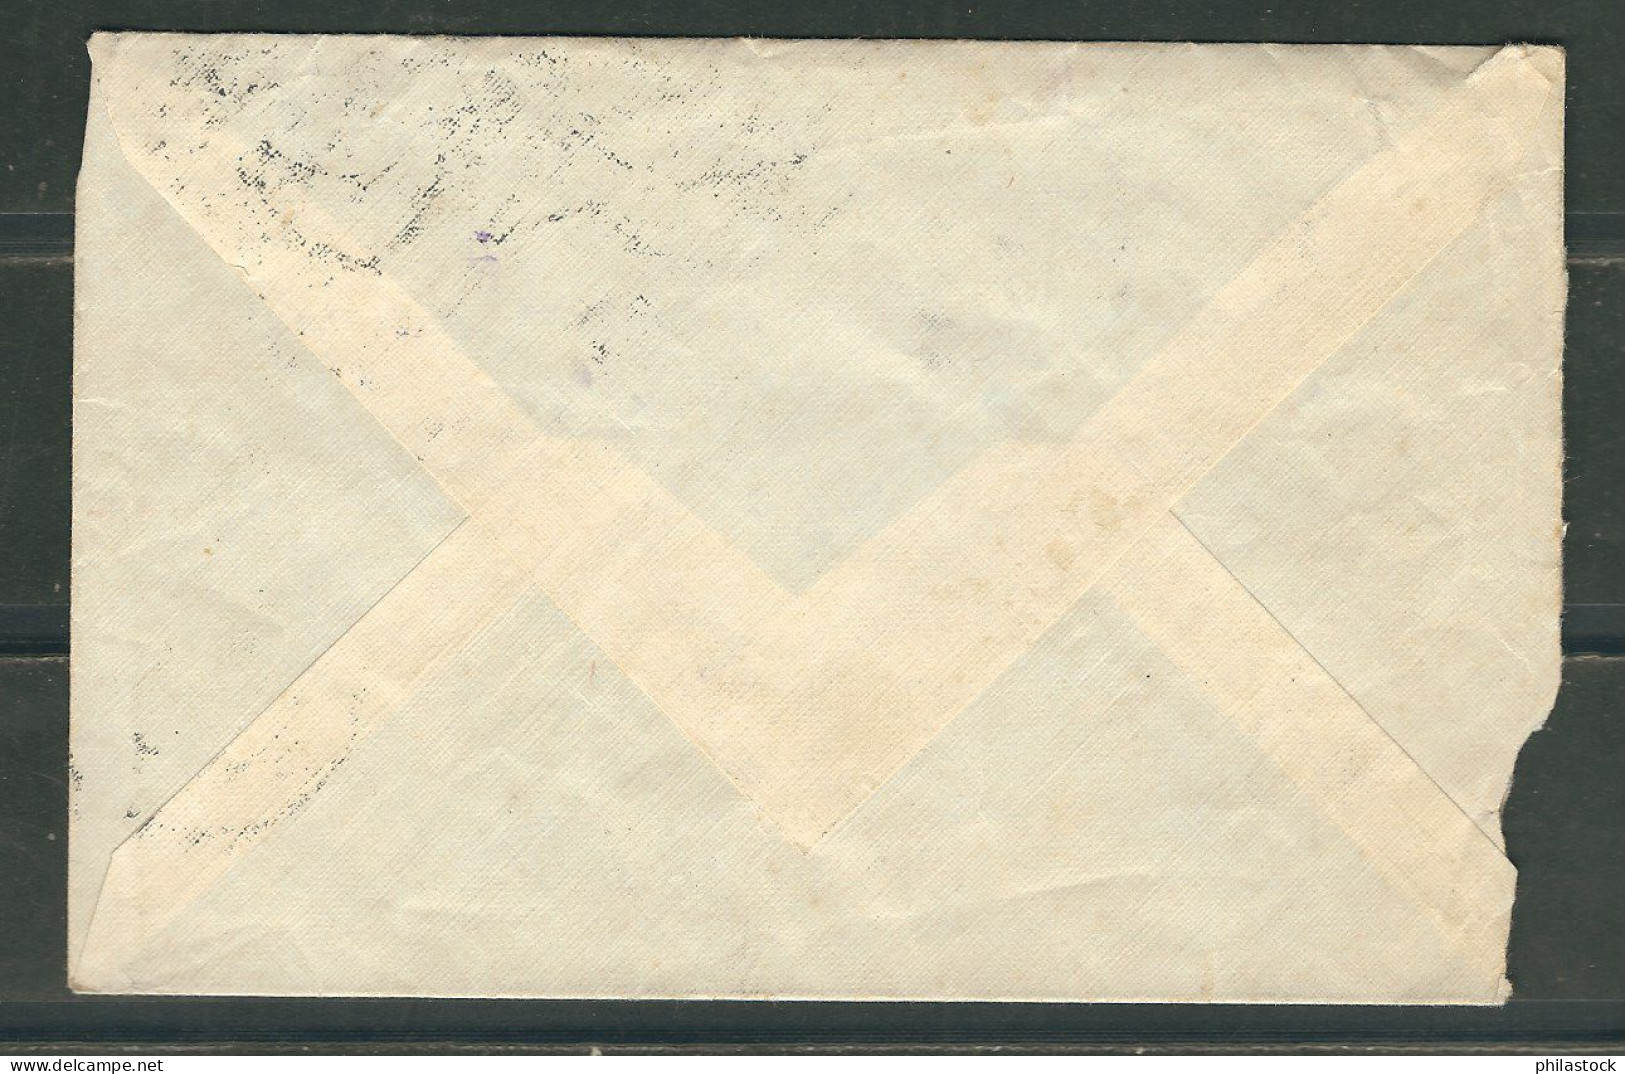 ESPAGNE 1937 Lettre Censurée De Melilla Pour Casablanca Maroc - Marques De Censures Nationalistes